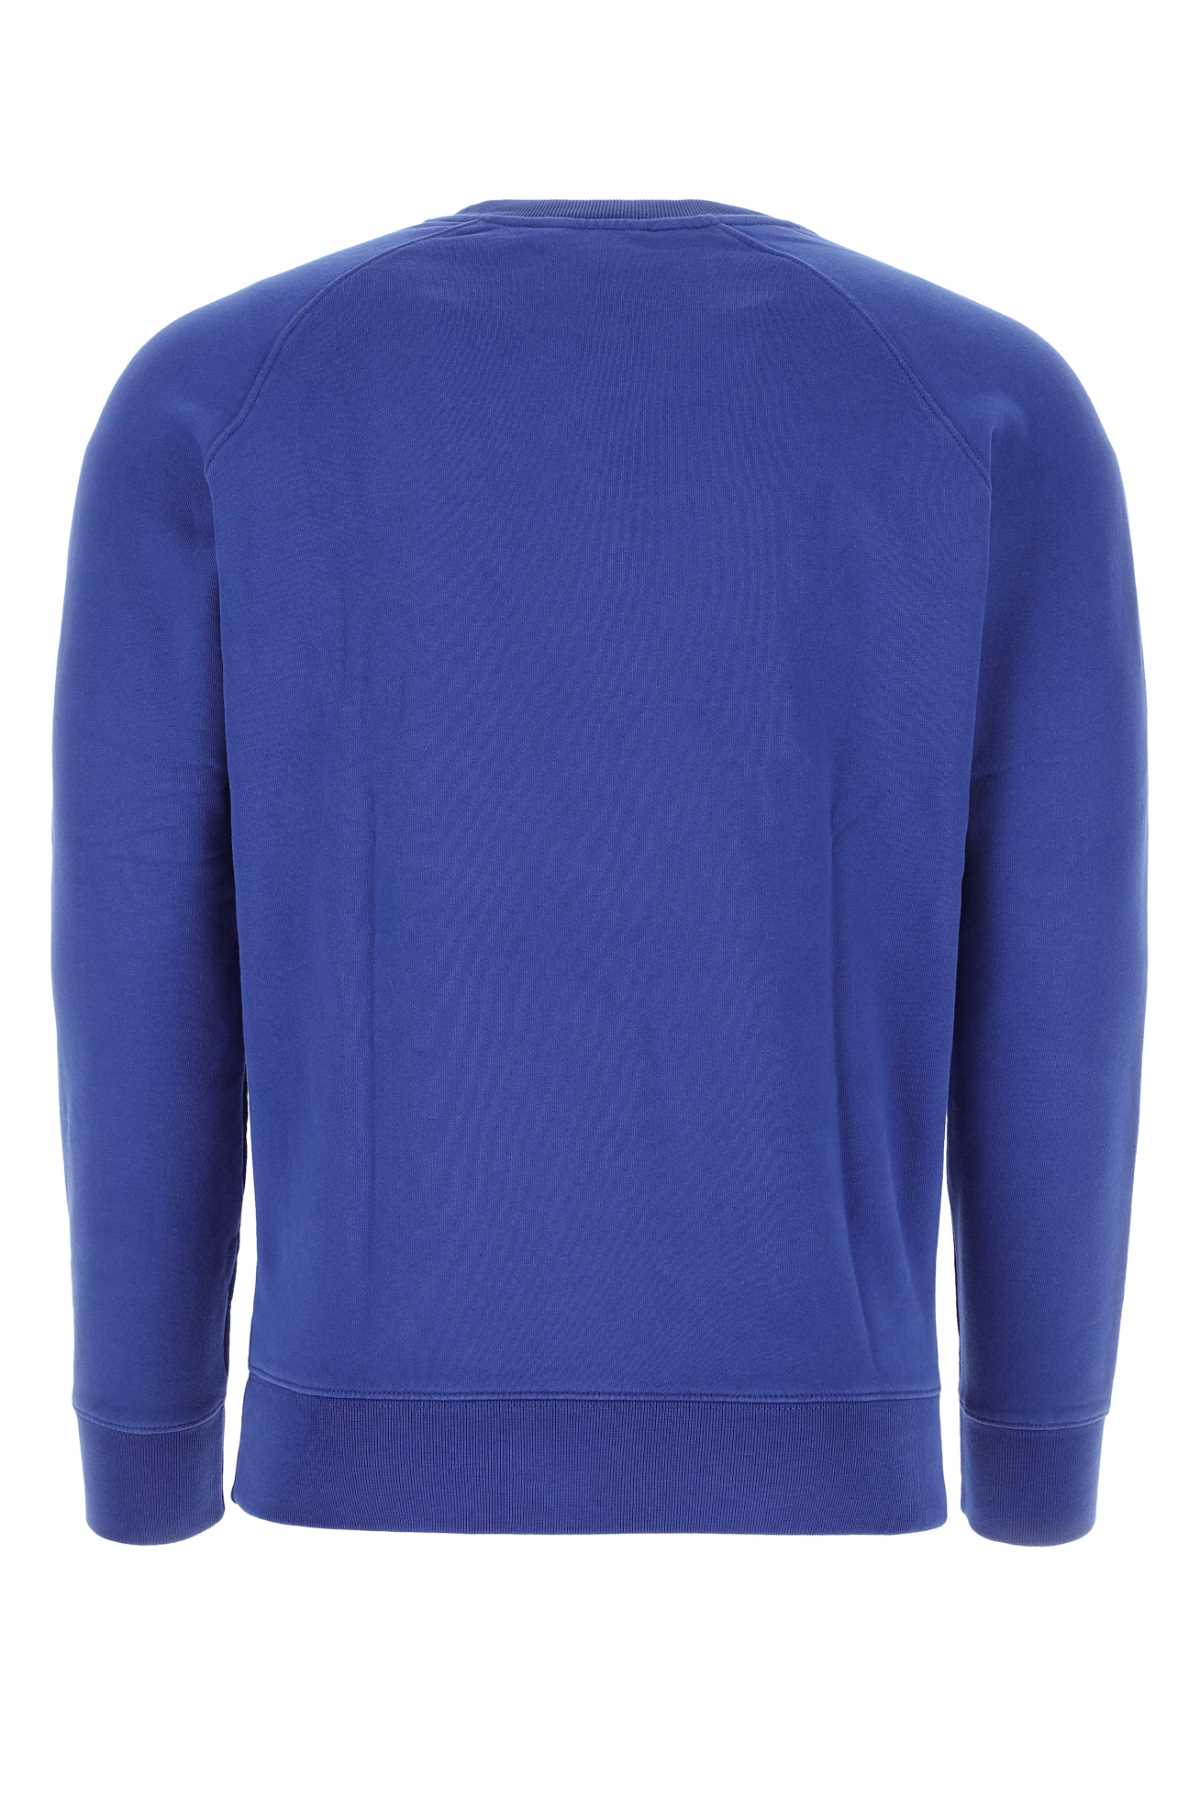 Shop Maison Kitsuné Blue Cotton Sweatshirt In P485